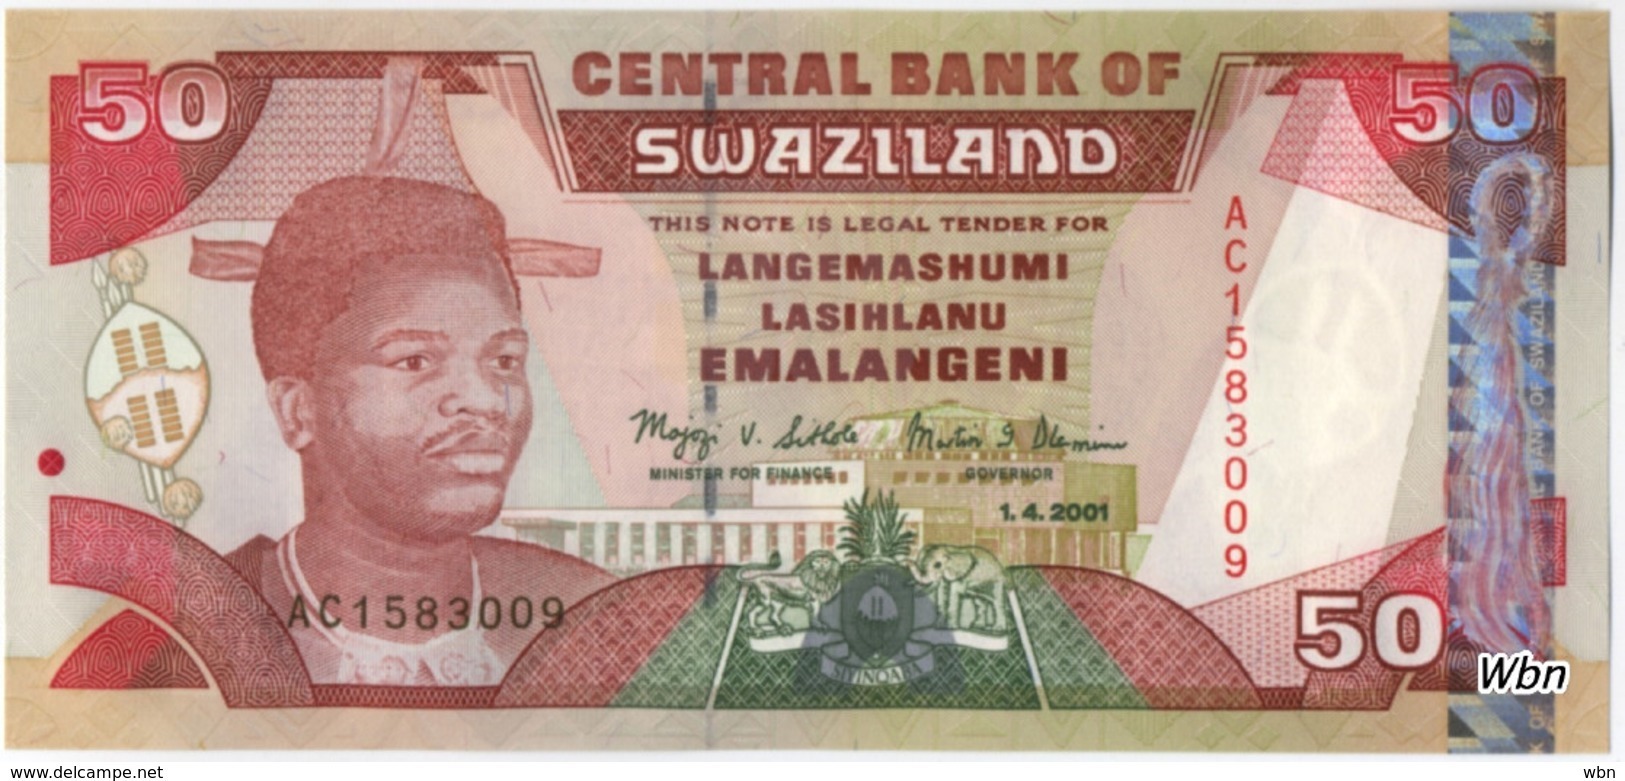 Swaziland 50 Emalangeni (P31) 2001 -UNC- - Swaziland